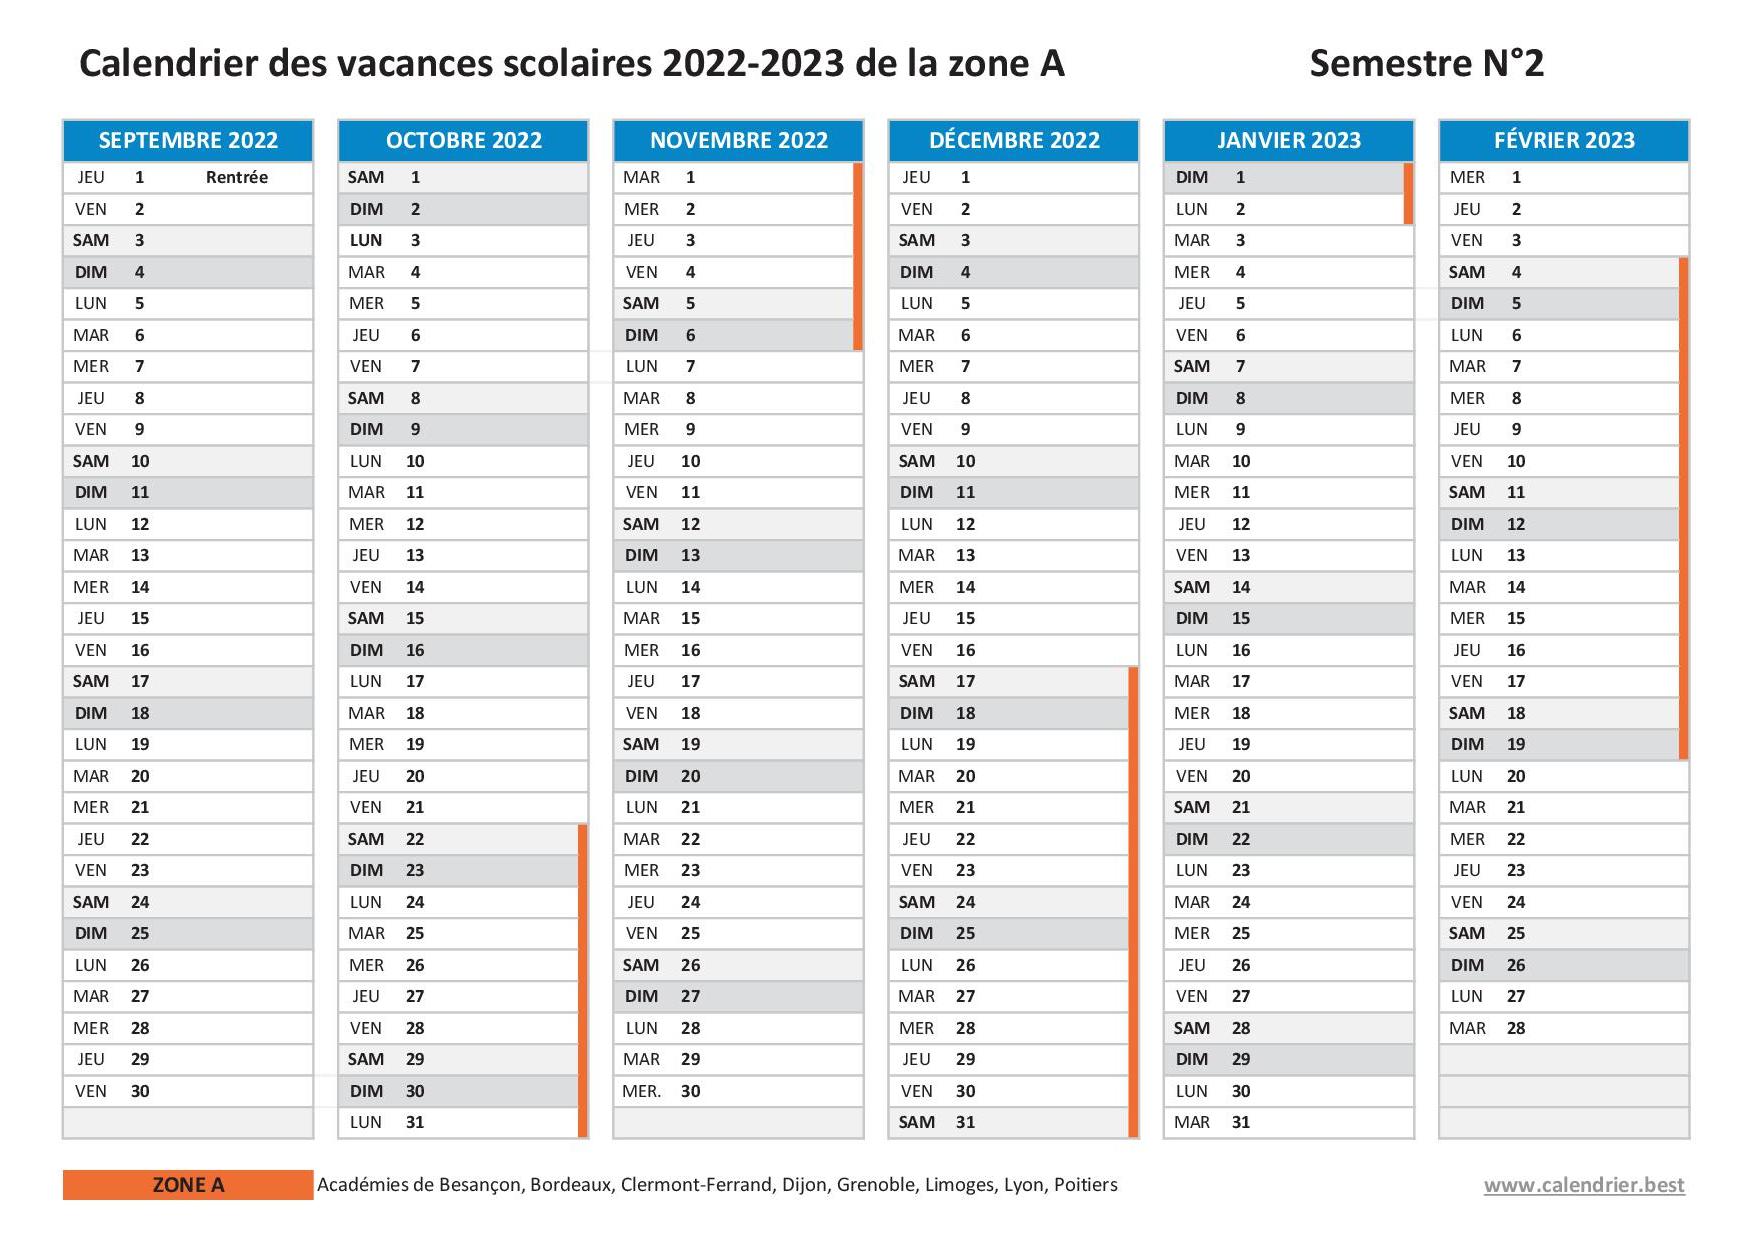 Vacances scolaires 2022 2023 Lyon : dates et calendrier scolaire 2022-2023